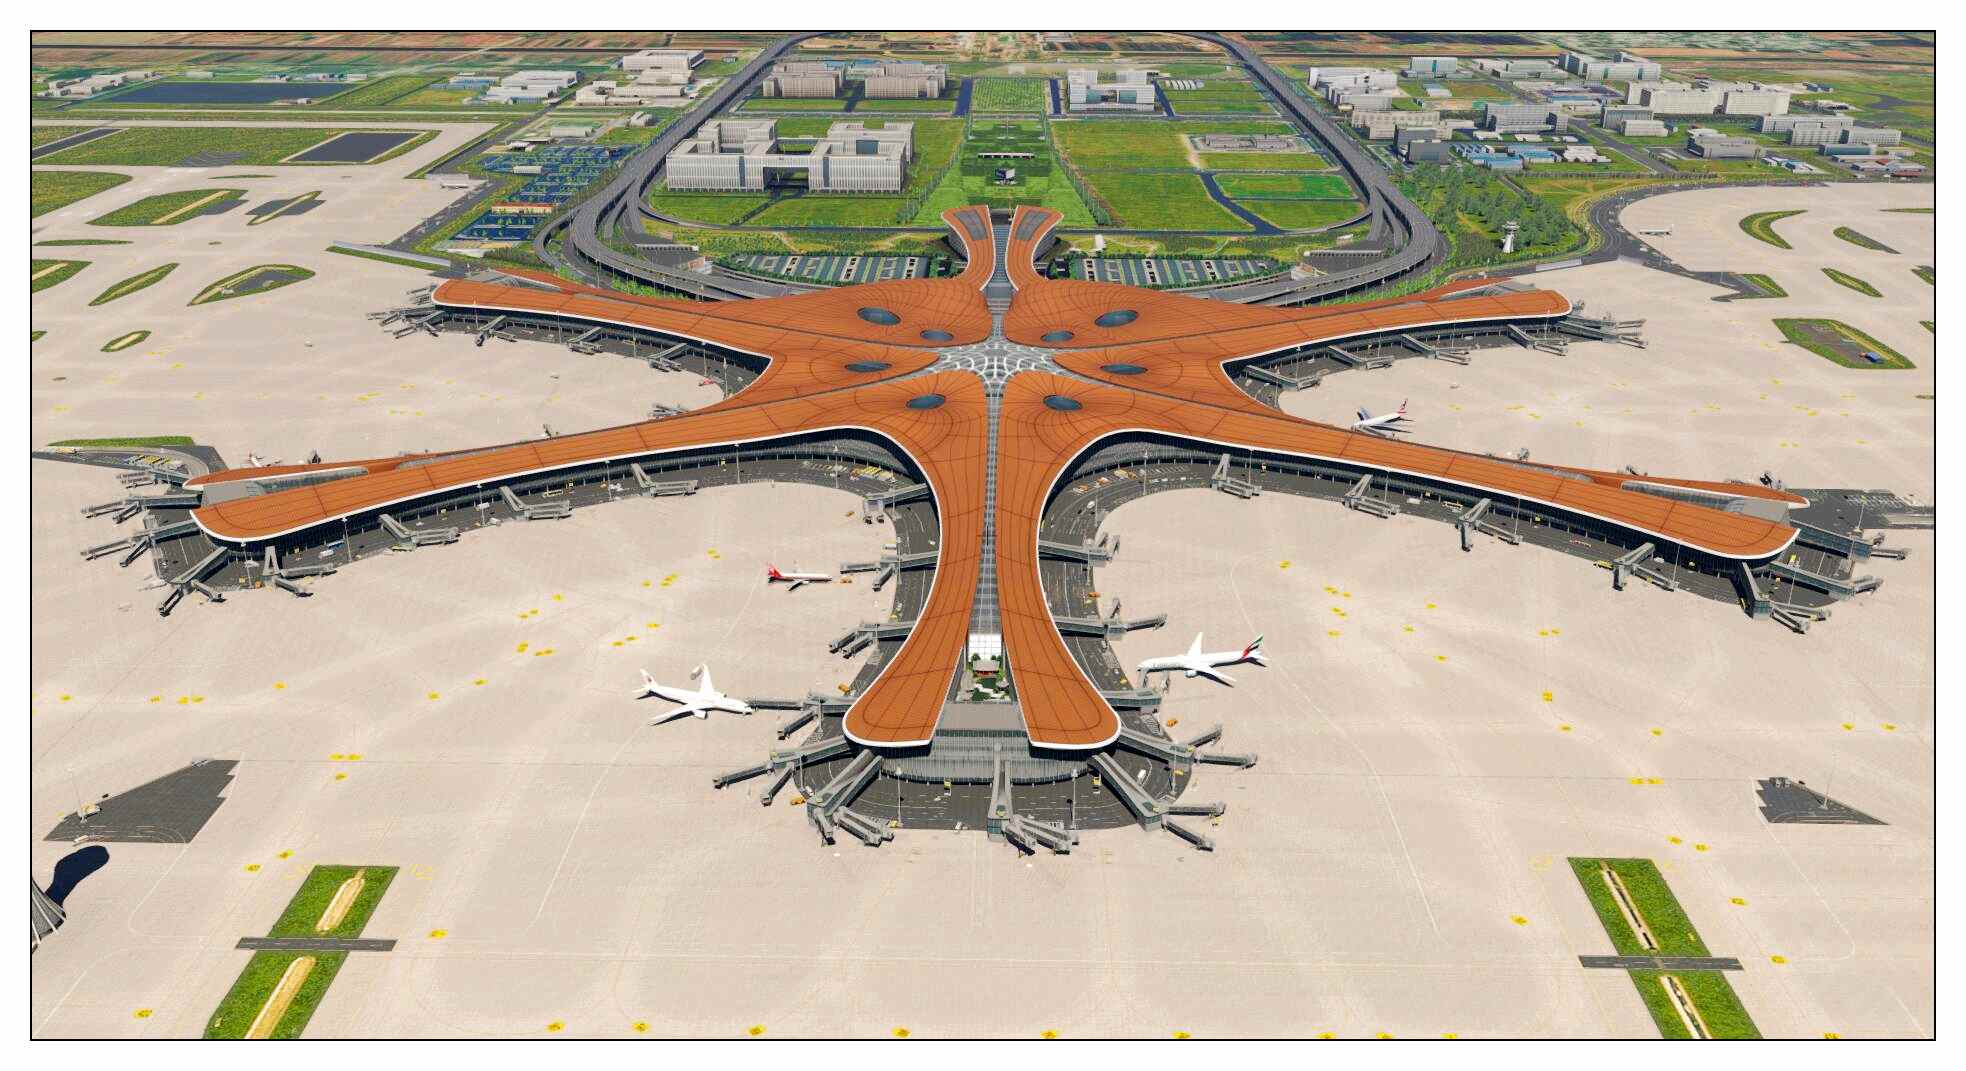 【X-Plane】ZBAD北京大兴国际机场-正式发布-621 